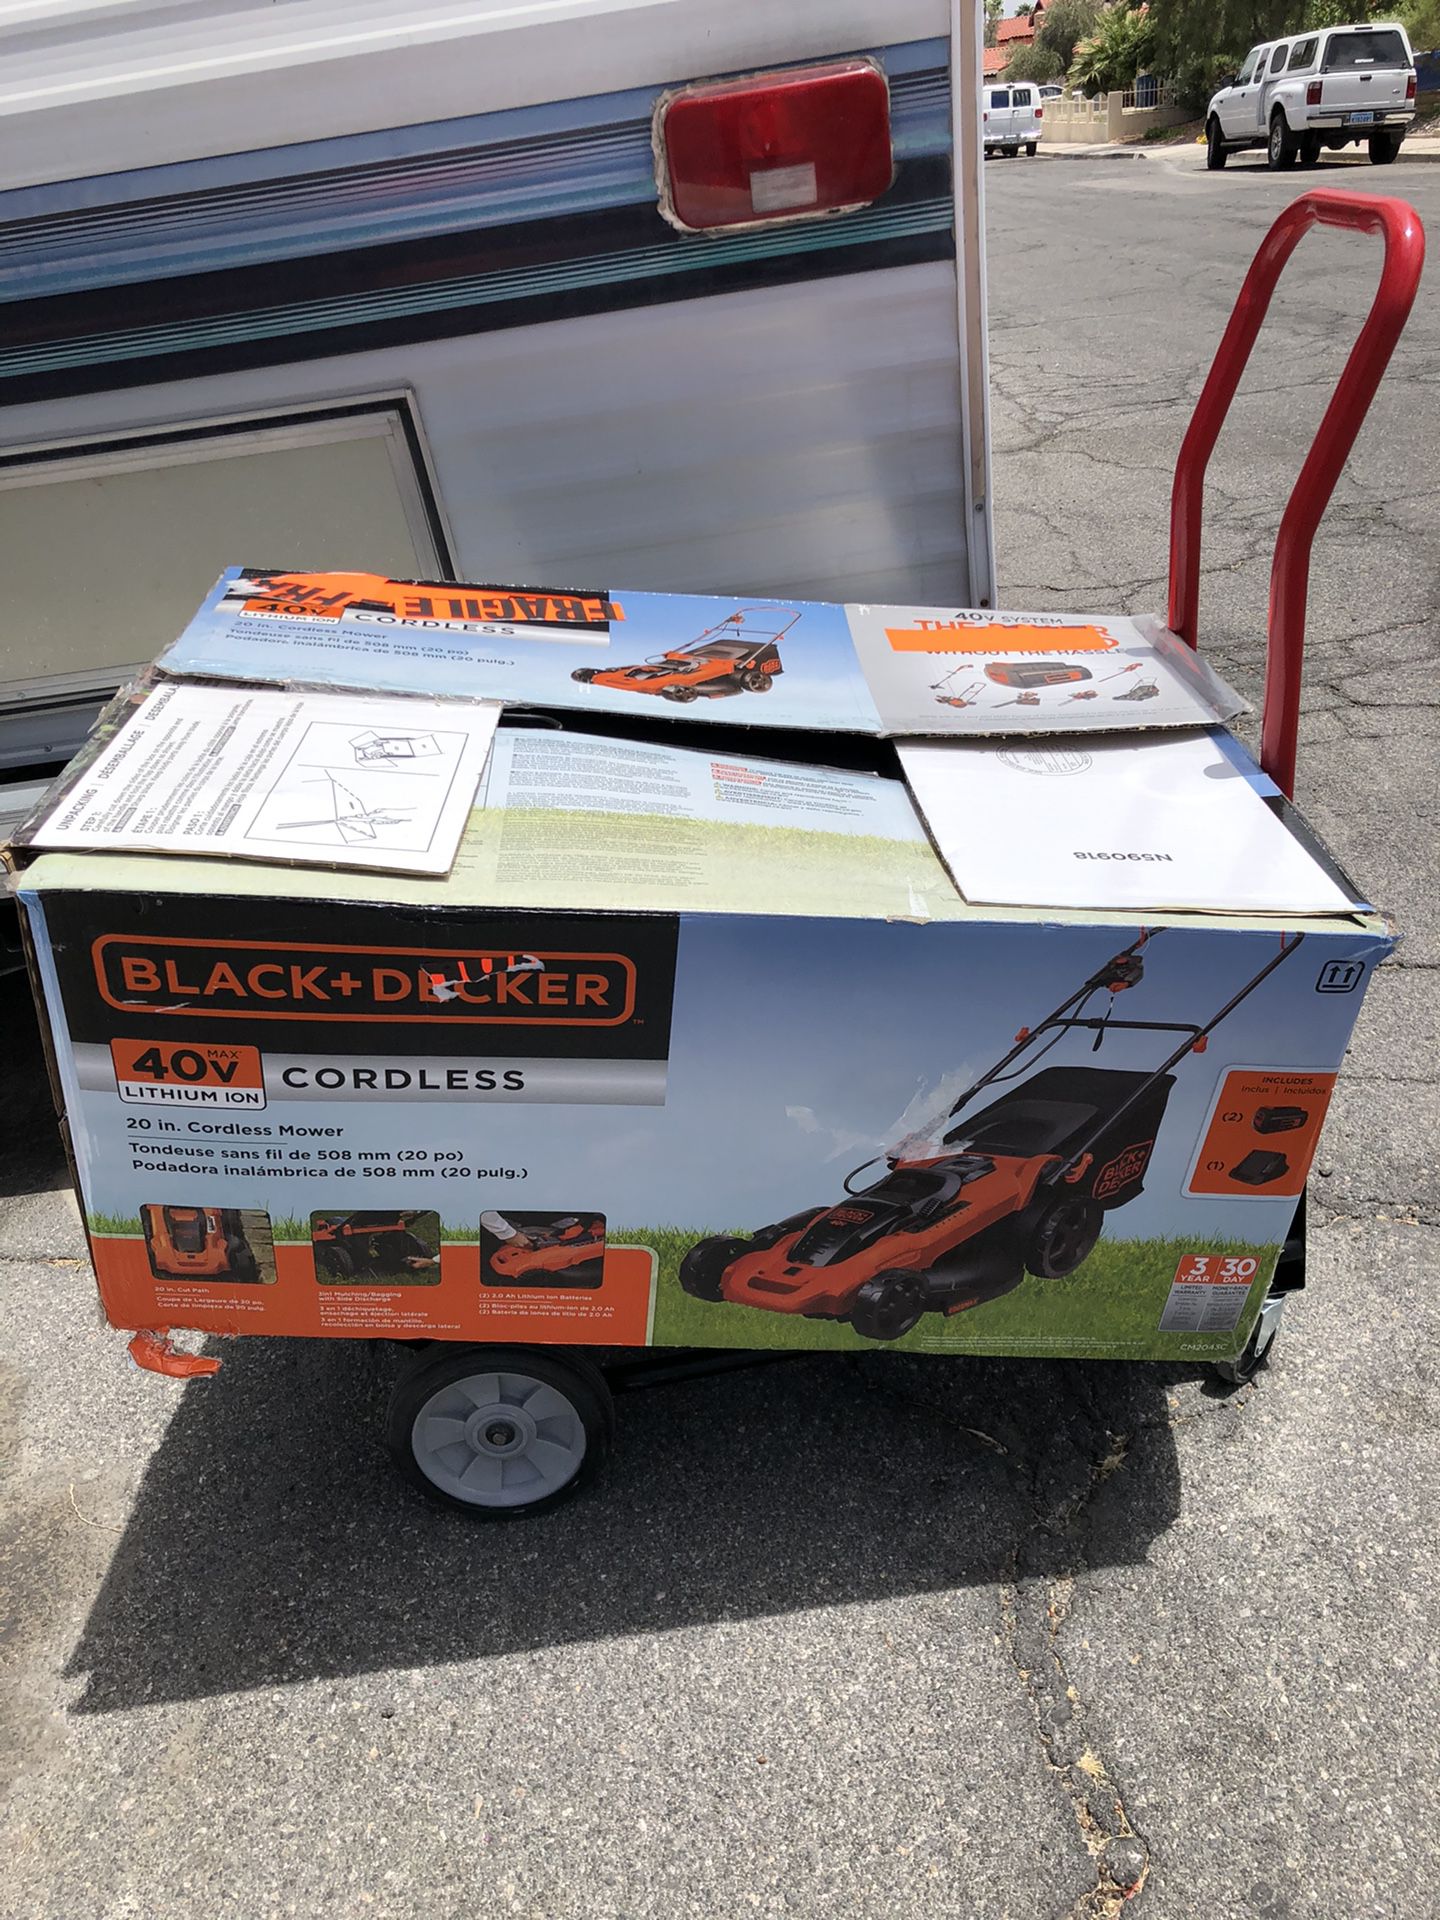 Black+Decker battery lawn mower